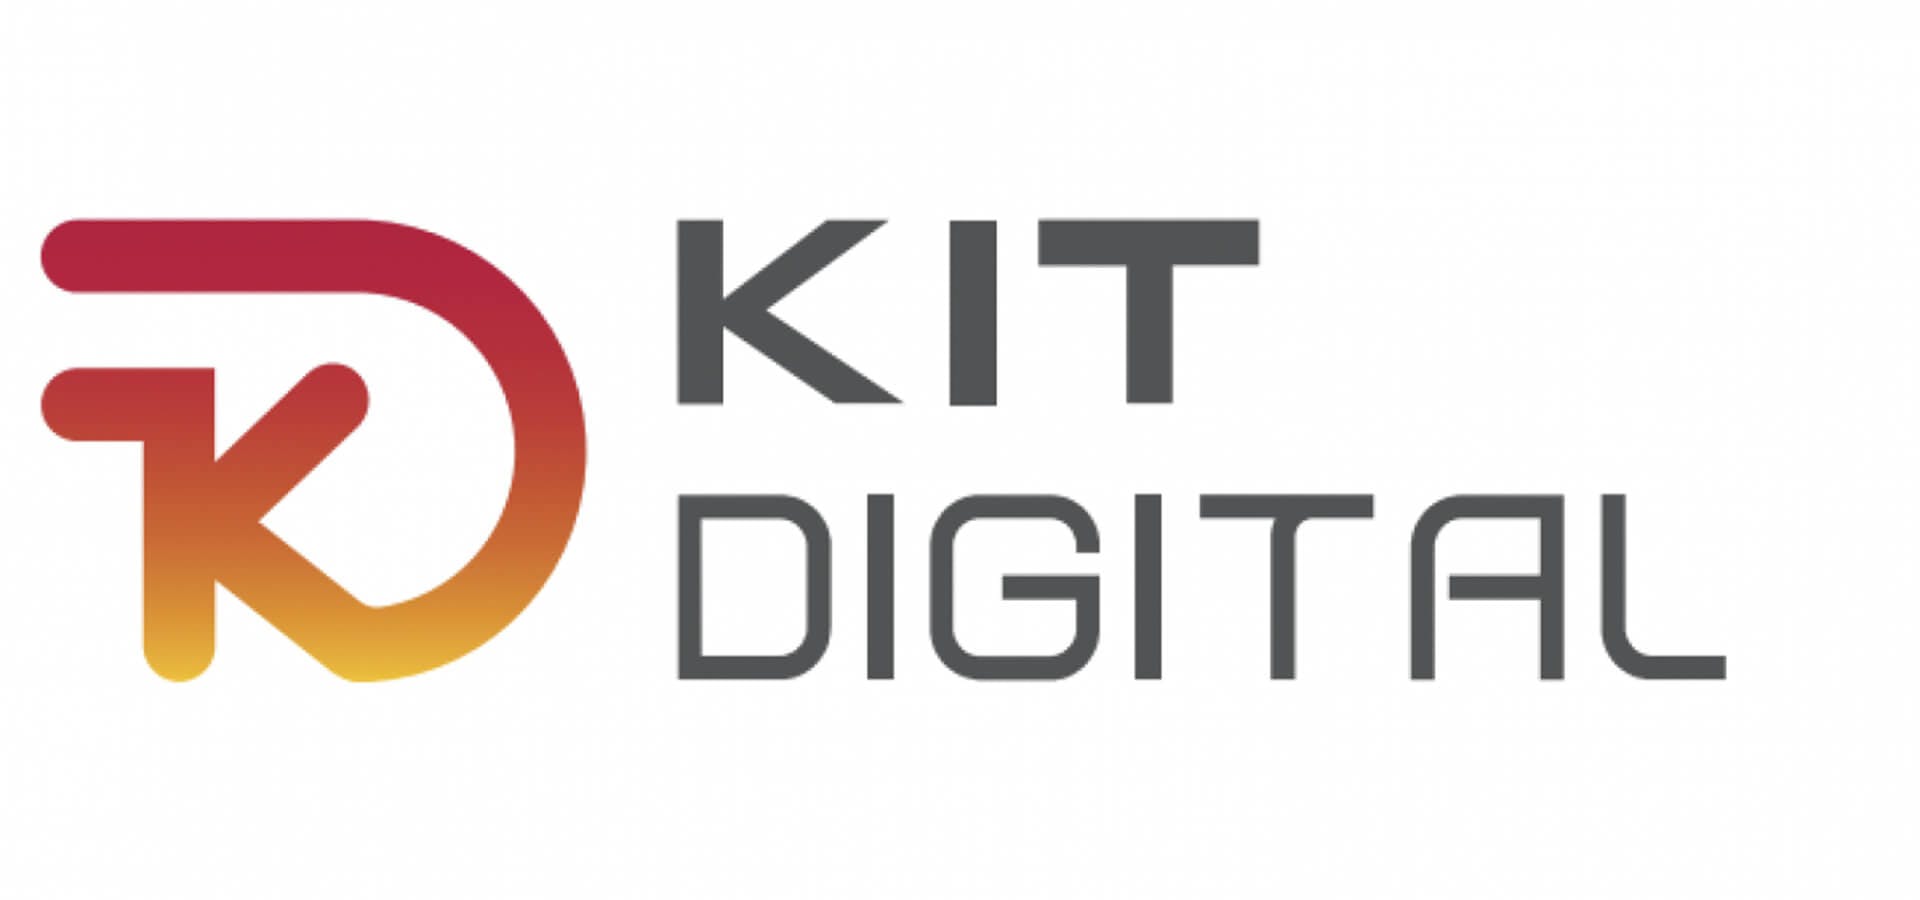 Logo del Kit Digital